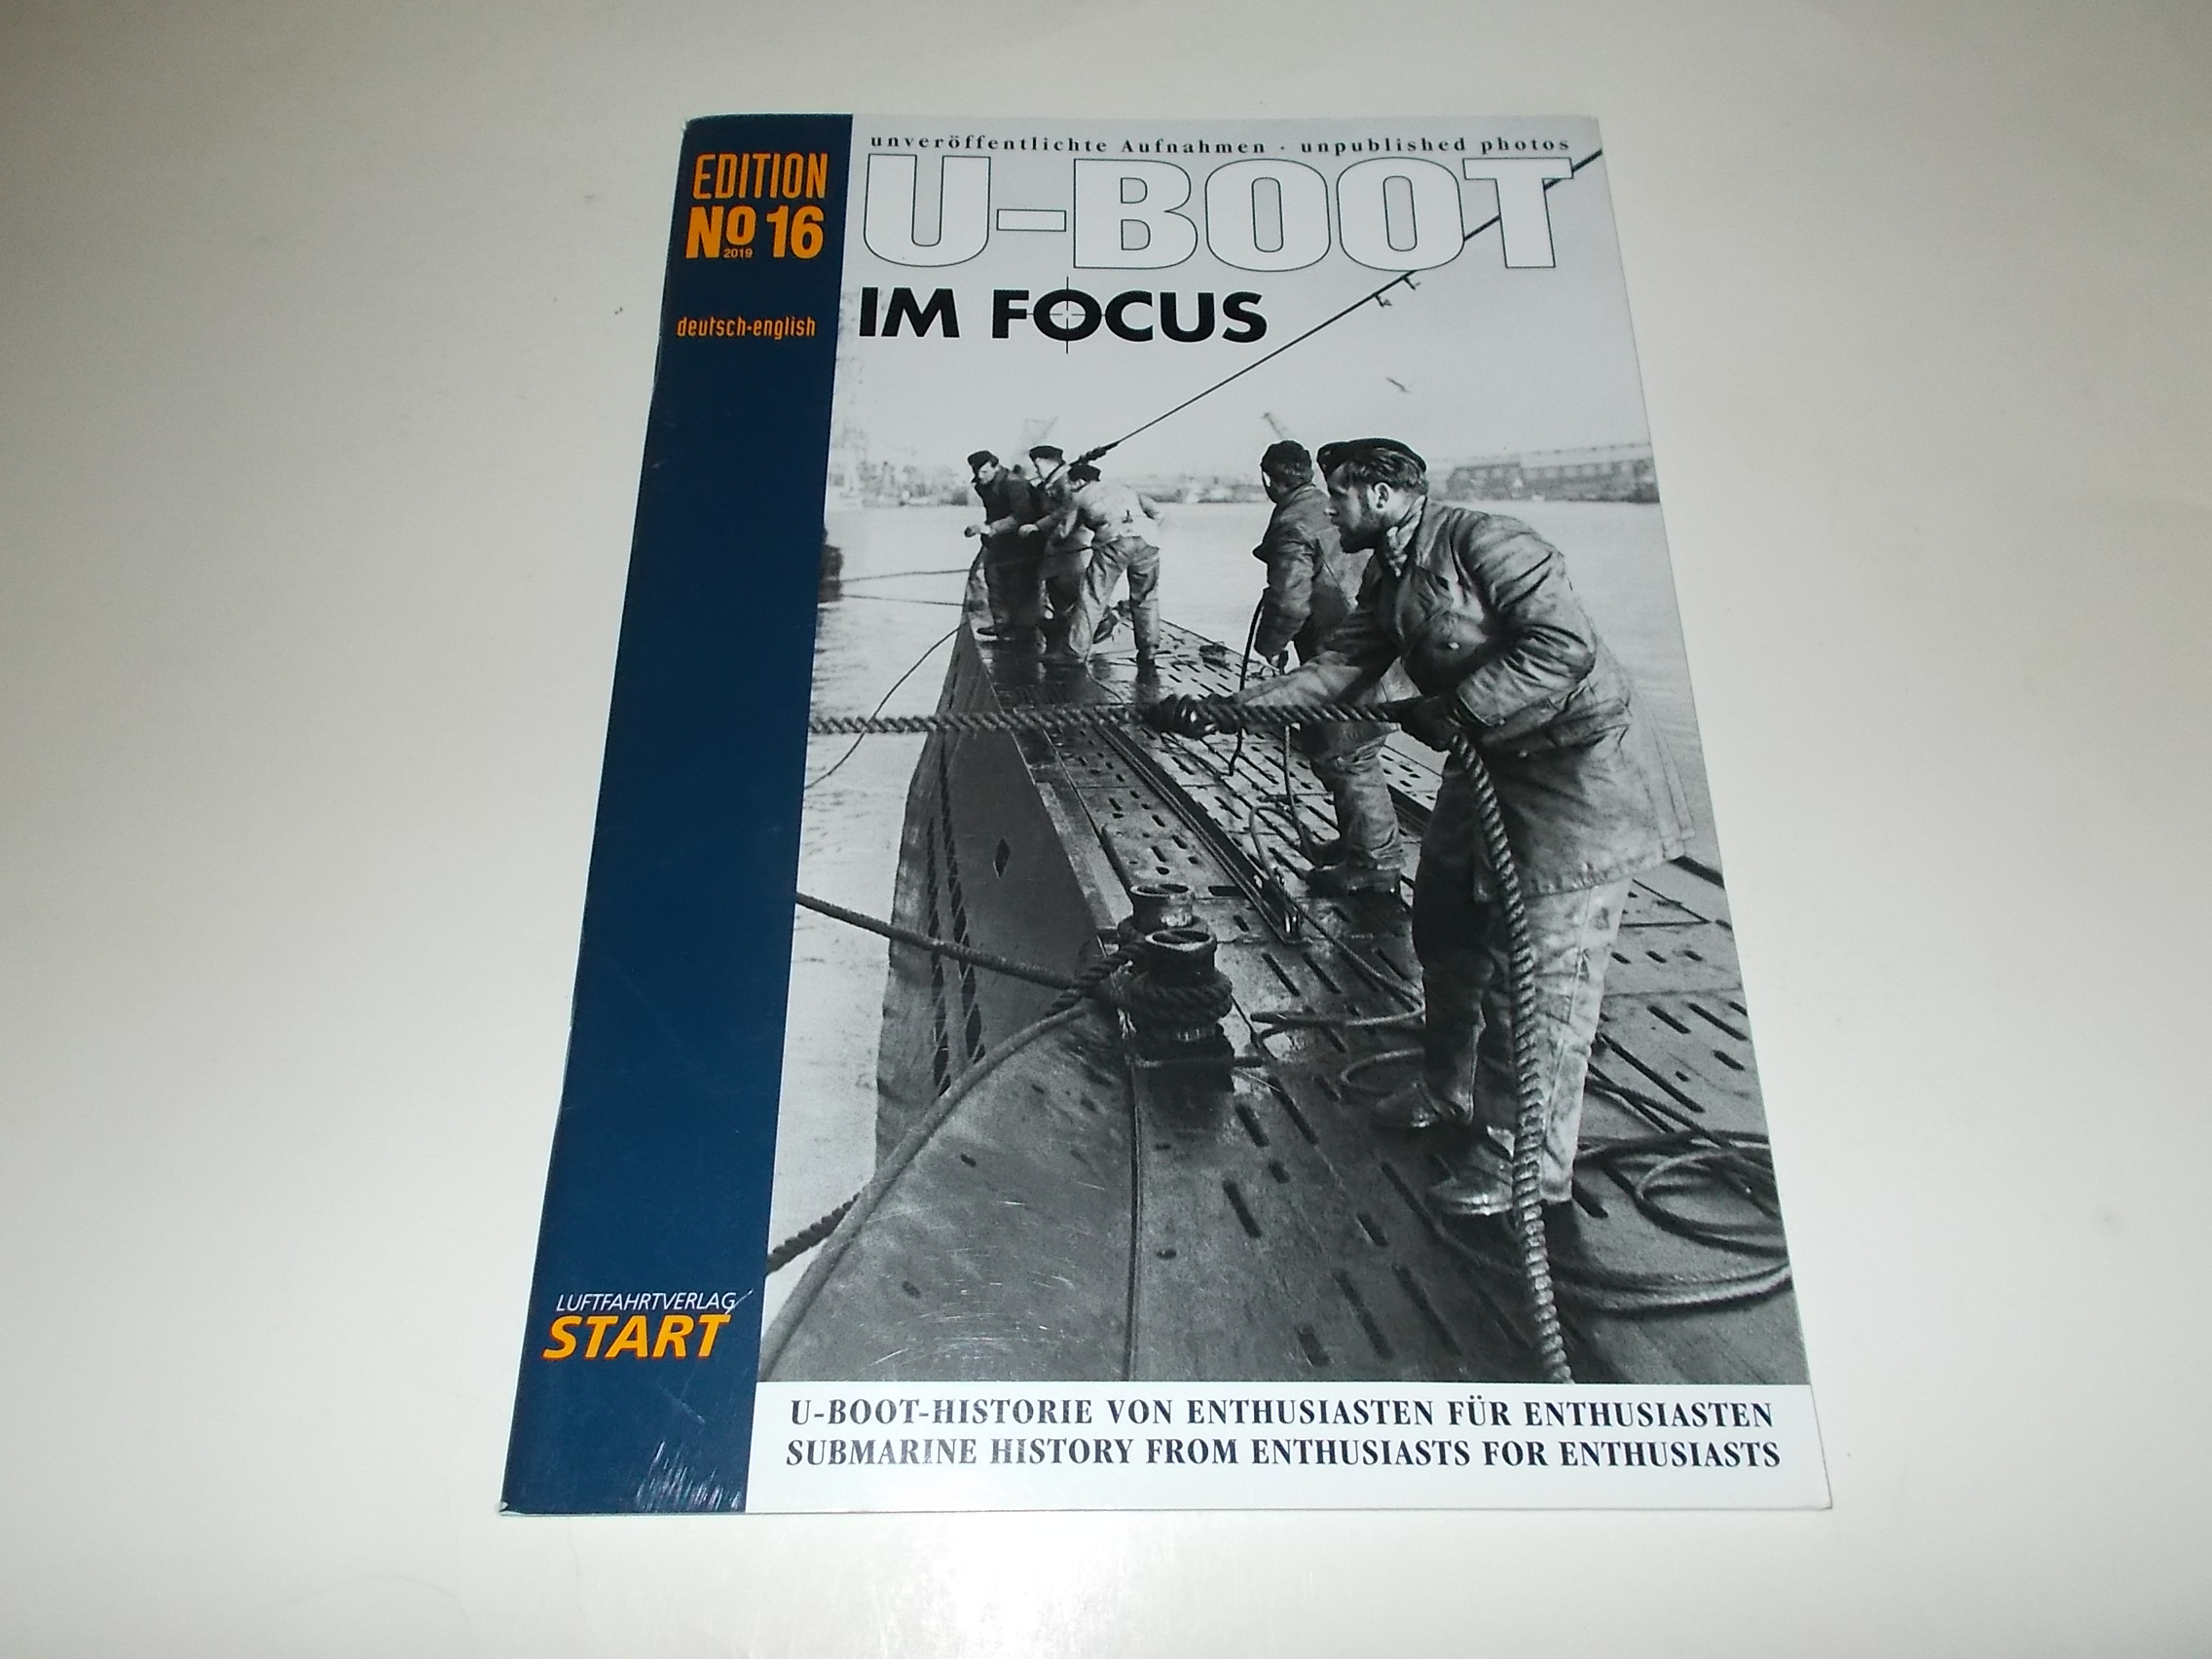 U-Boot im Focus Edition 16: U-Boot Historie für Enthusiasten von Enthusiasten (U-Boot im Focus / Edition 5 Unveröffentlichte Aufnahmen) - Axel Urbanke